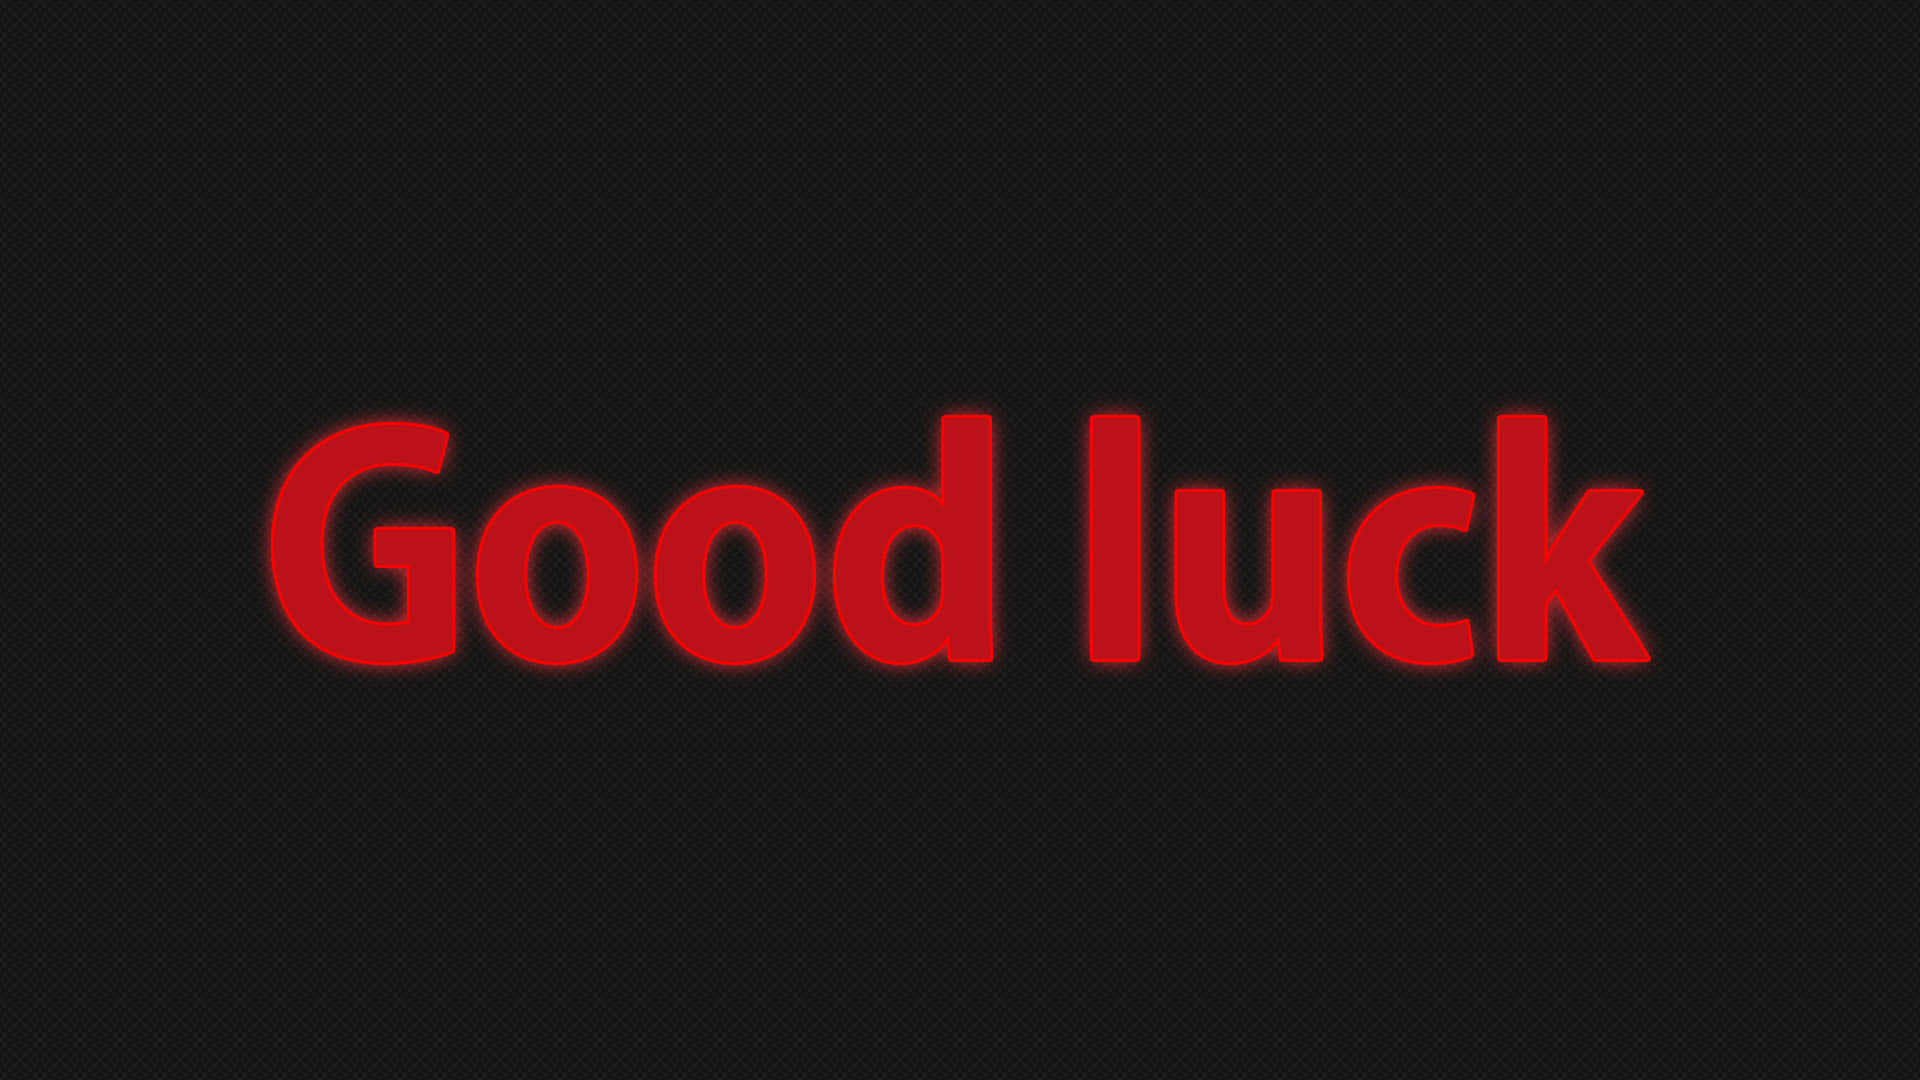 Wishing you Good Luck!